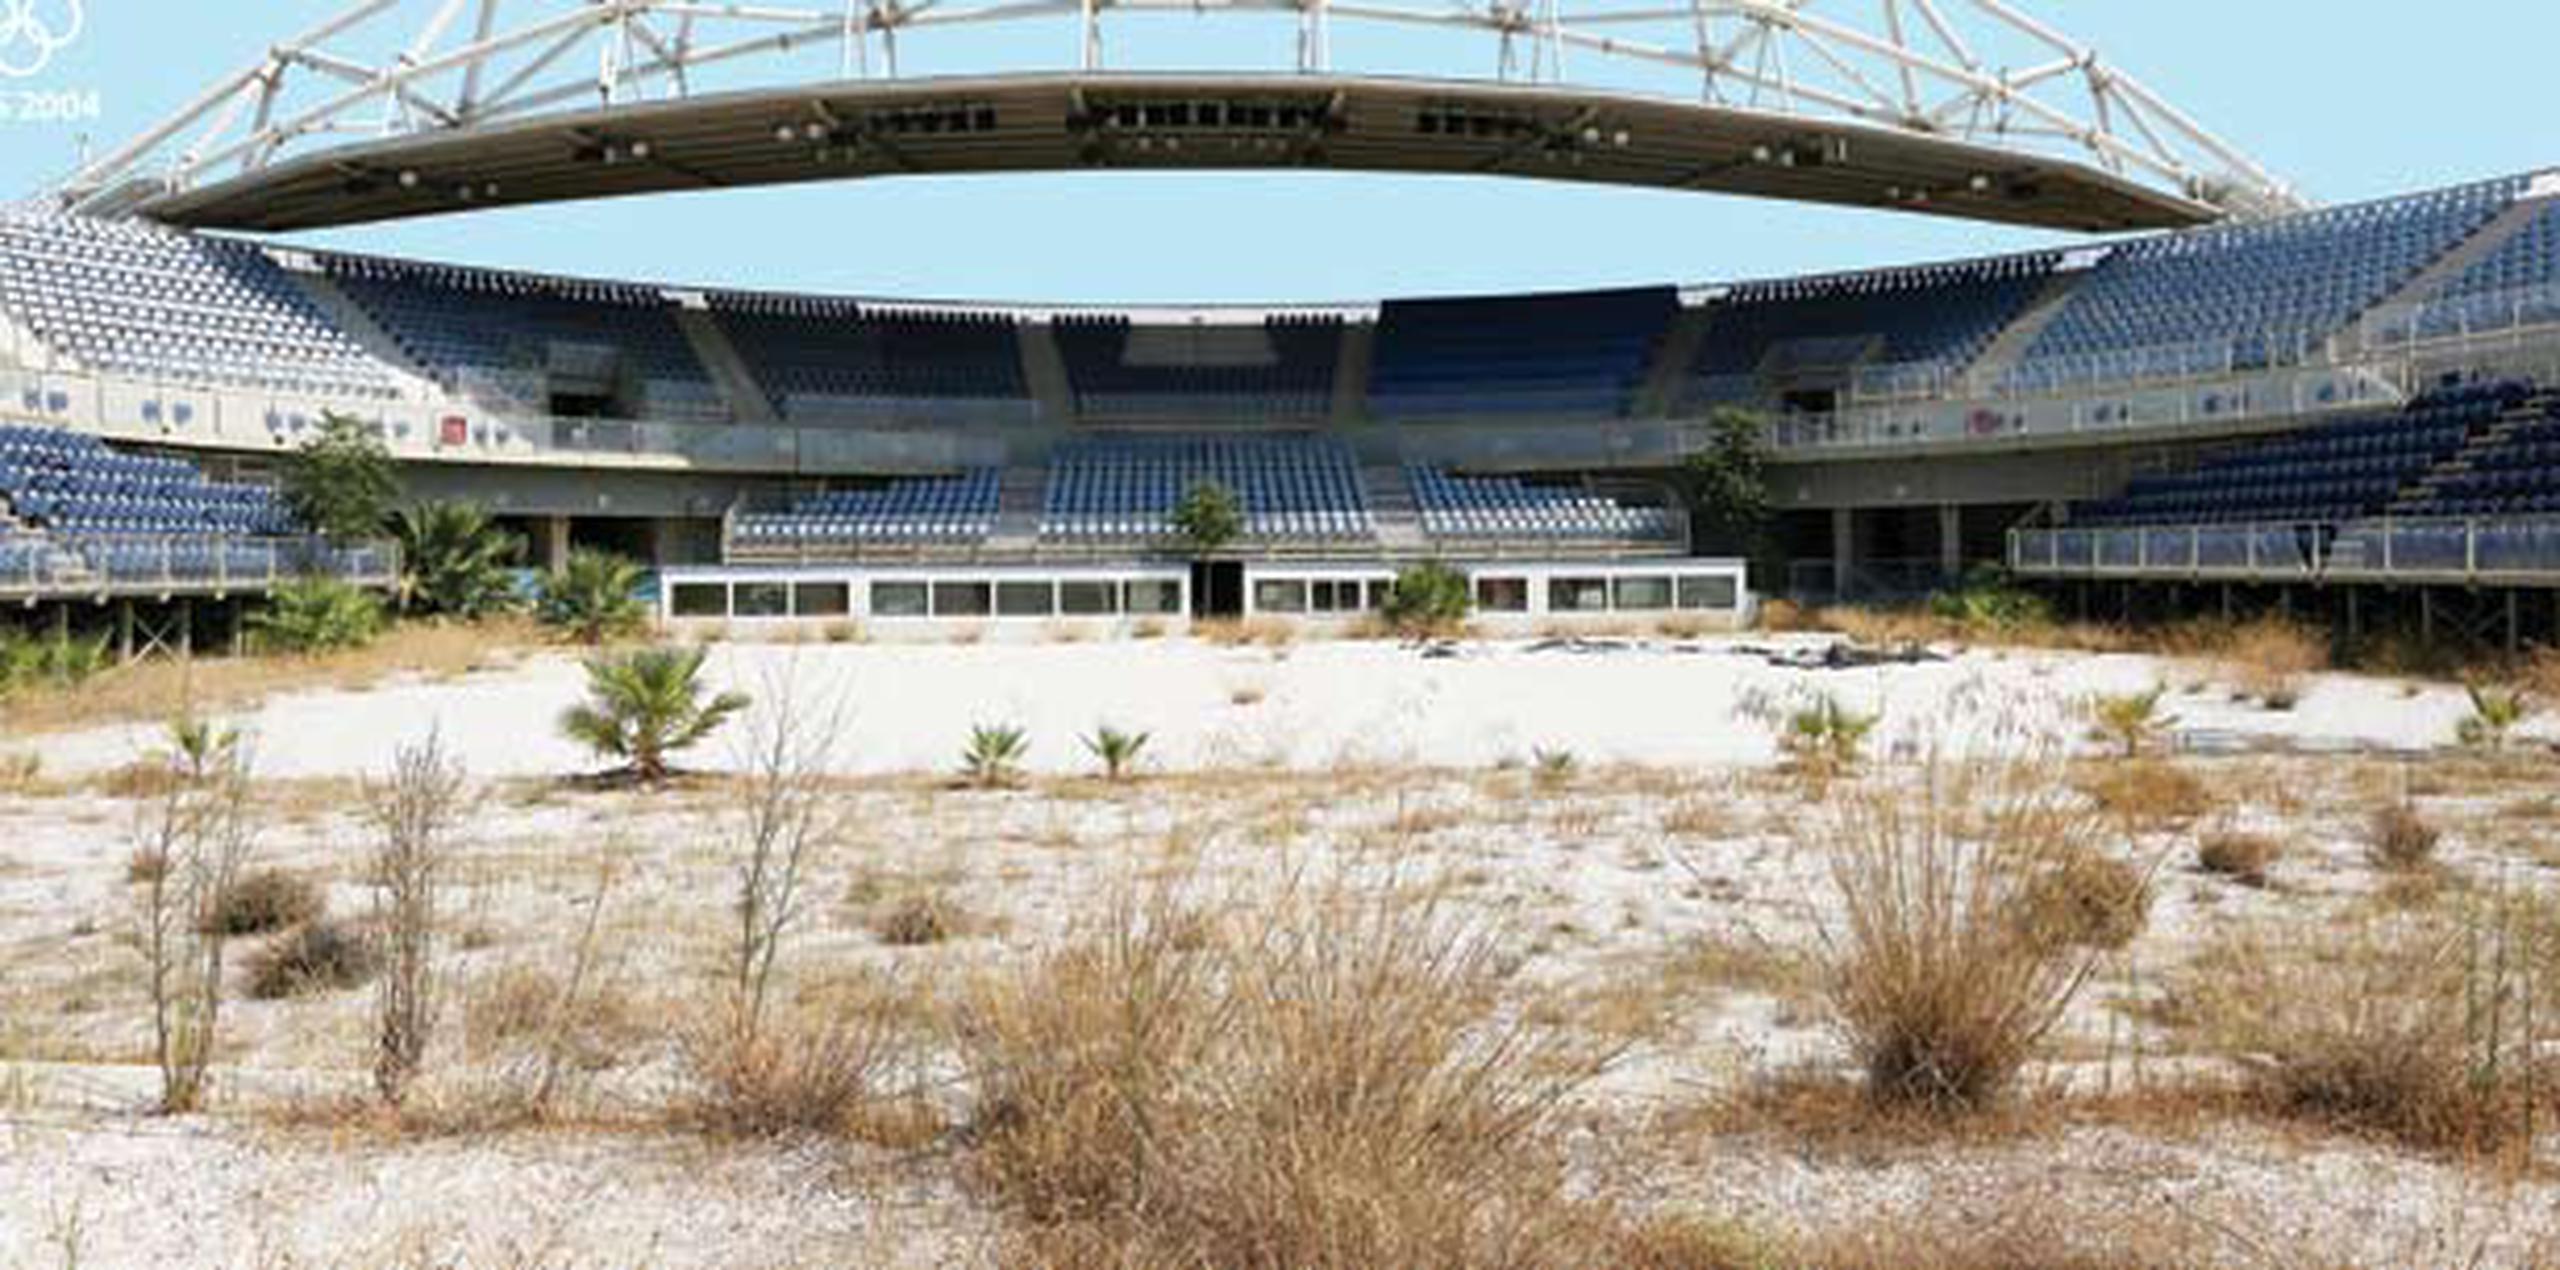 El estadio donde se celebró el voleibol playero olímpico en Atenas es uno de los ejemplos del abandono de edificios deportivos en la capital griega. (EFE / Orestis Panagiotou)